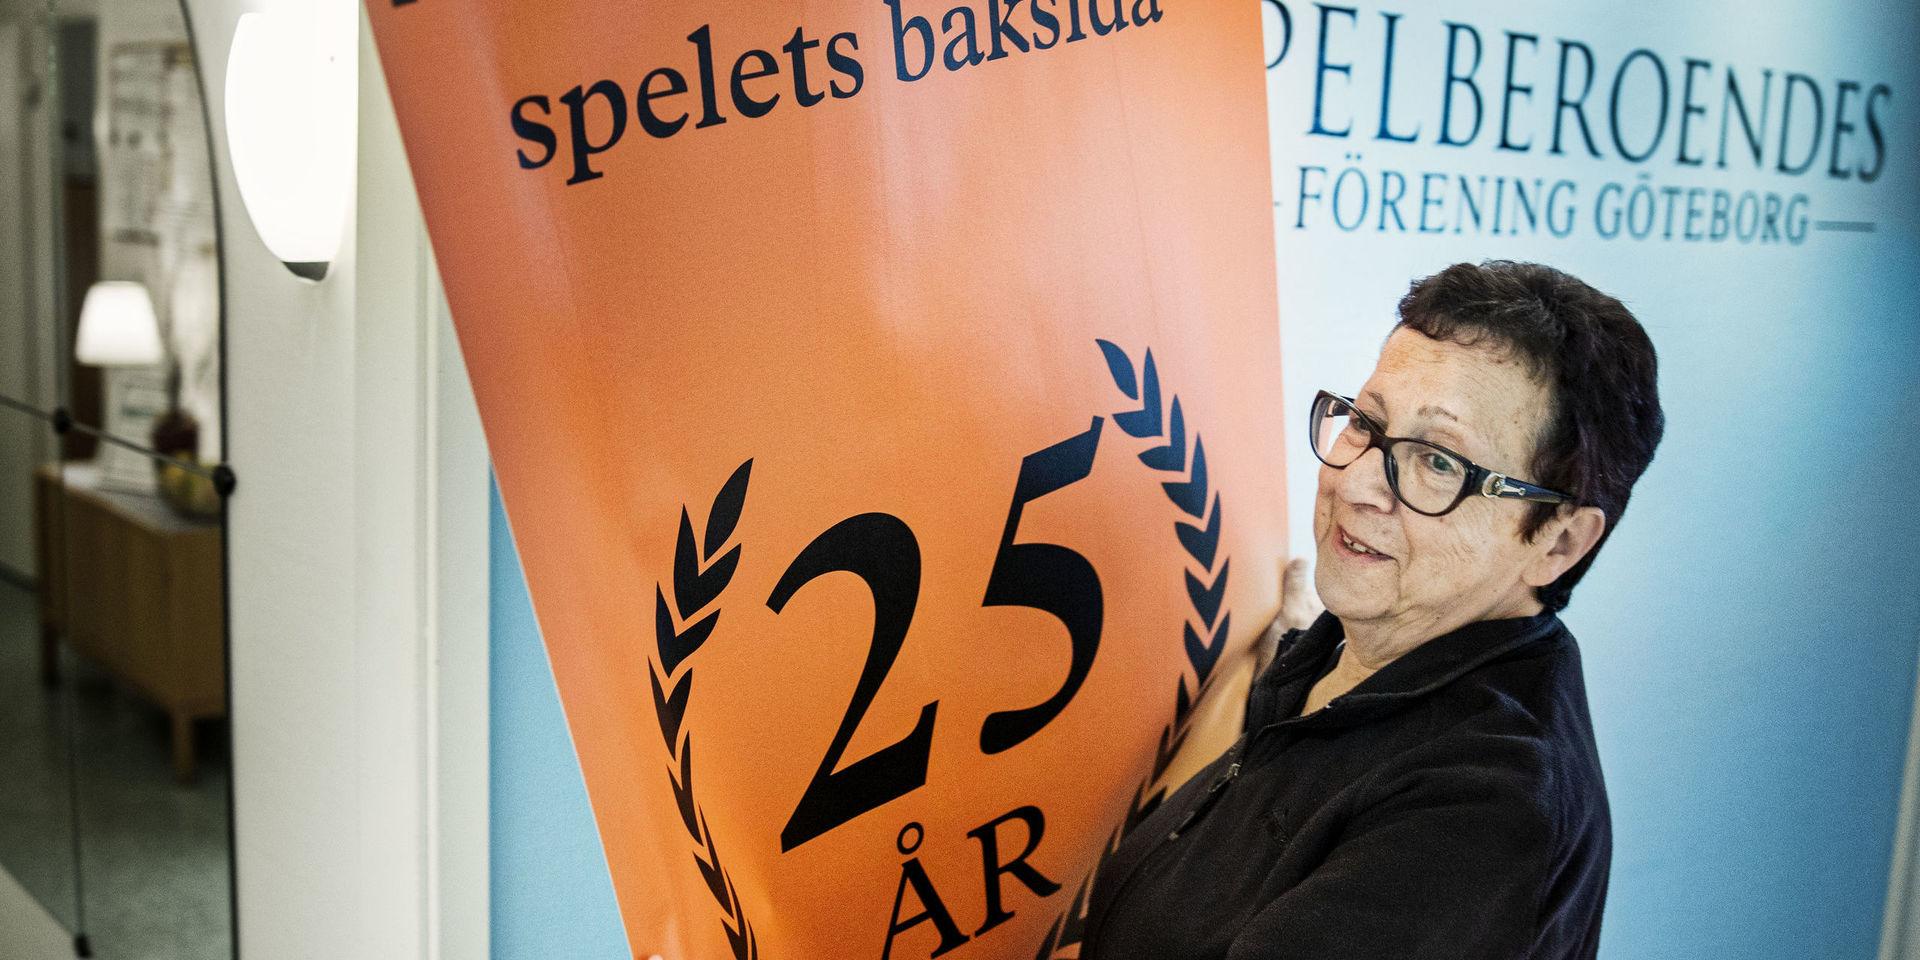 ”Jag har varit spelfri i nio år och har aldrig mått bättre i hela mitt liv”, säger Judith Horvath som i dag är anställd av Spelberoendes förening på Masthuggsliden i Göteborg. Föreningen, som firar 25-årsjubileum i år, erbjuder stöd till både spelare och anhöriga från personer med egen erfarenhet av spelmissbruk.